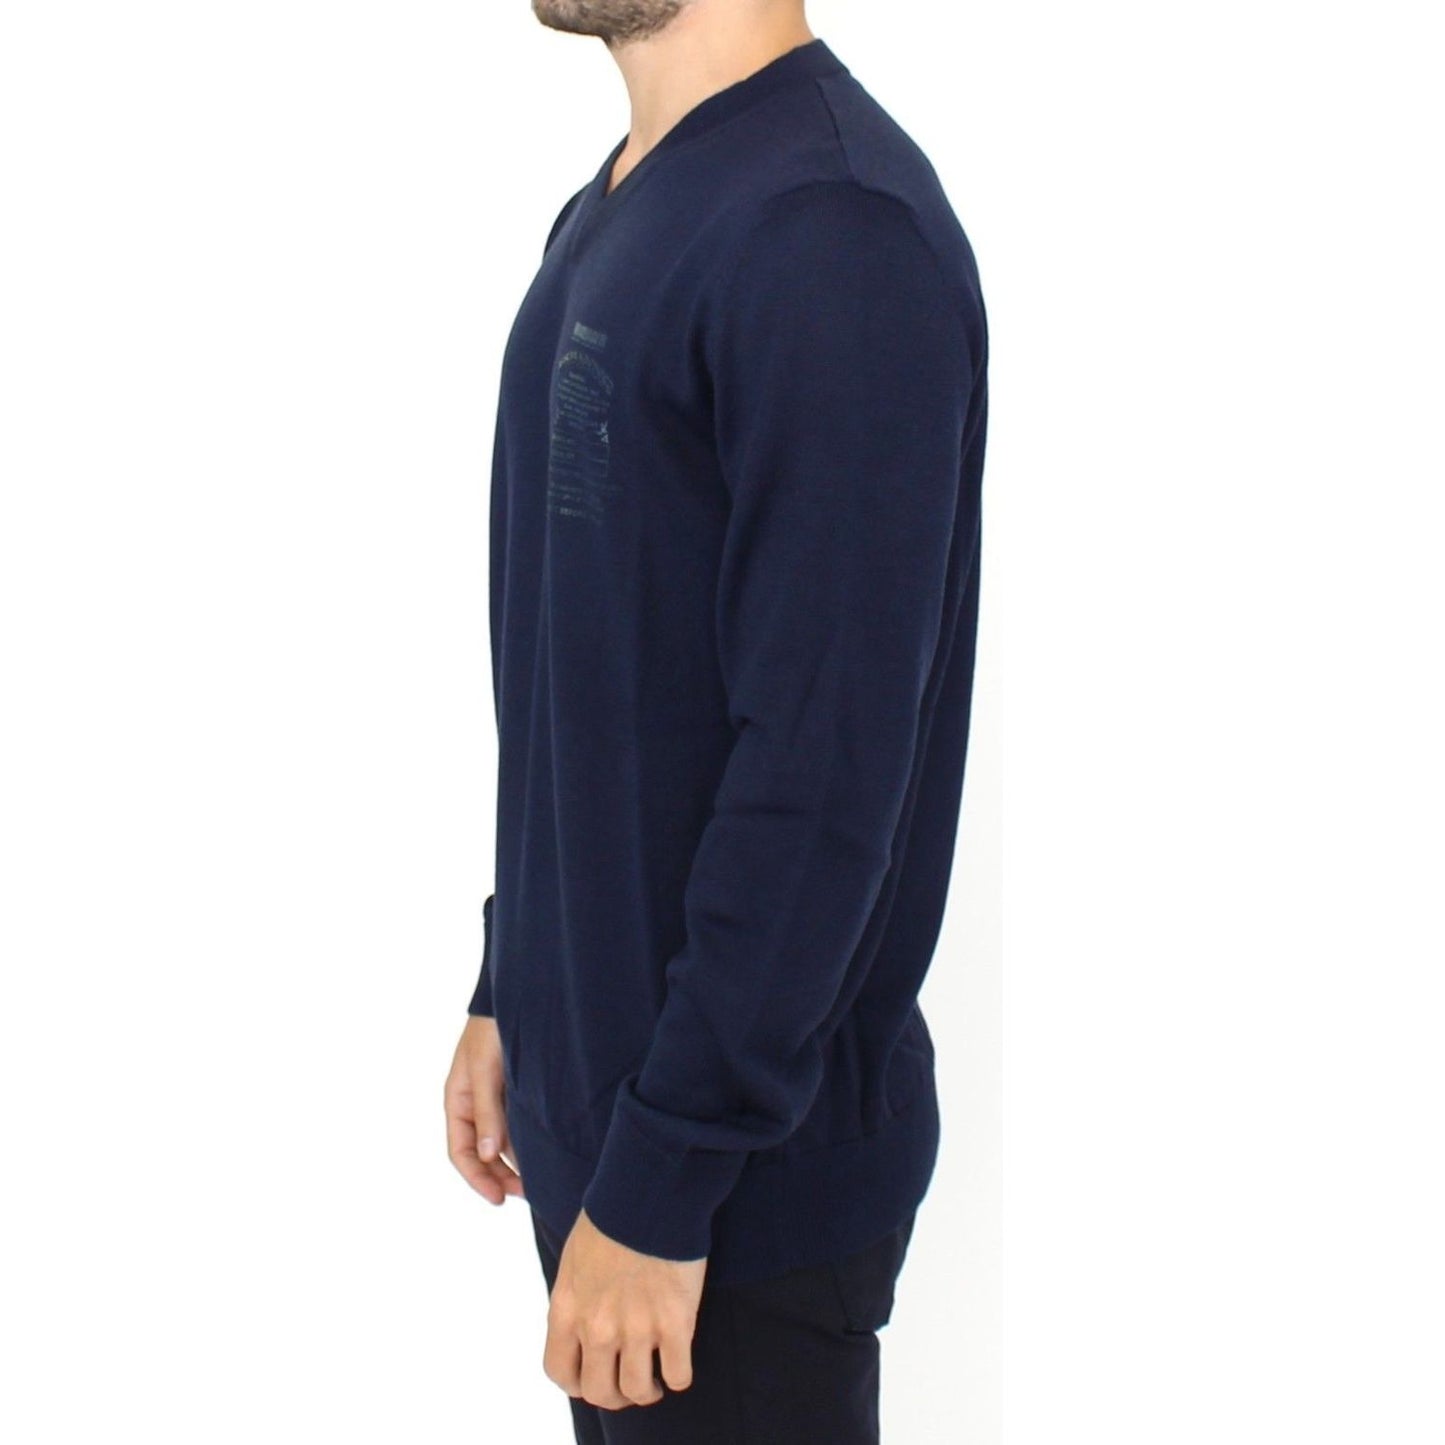 Ermanno Scervino Elegant Blue V-Neck Wool Blend Pullover blue-wool-blend-v-neck-pullover-sweater 37438-blue-wool-blend-v-neck-pullover-sweater-1.jpg